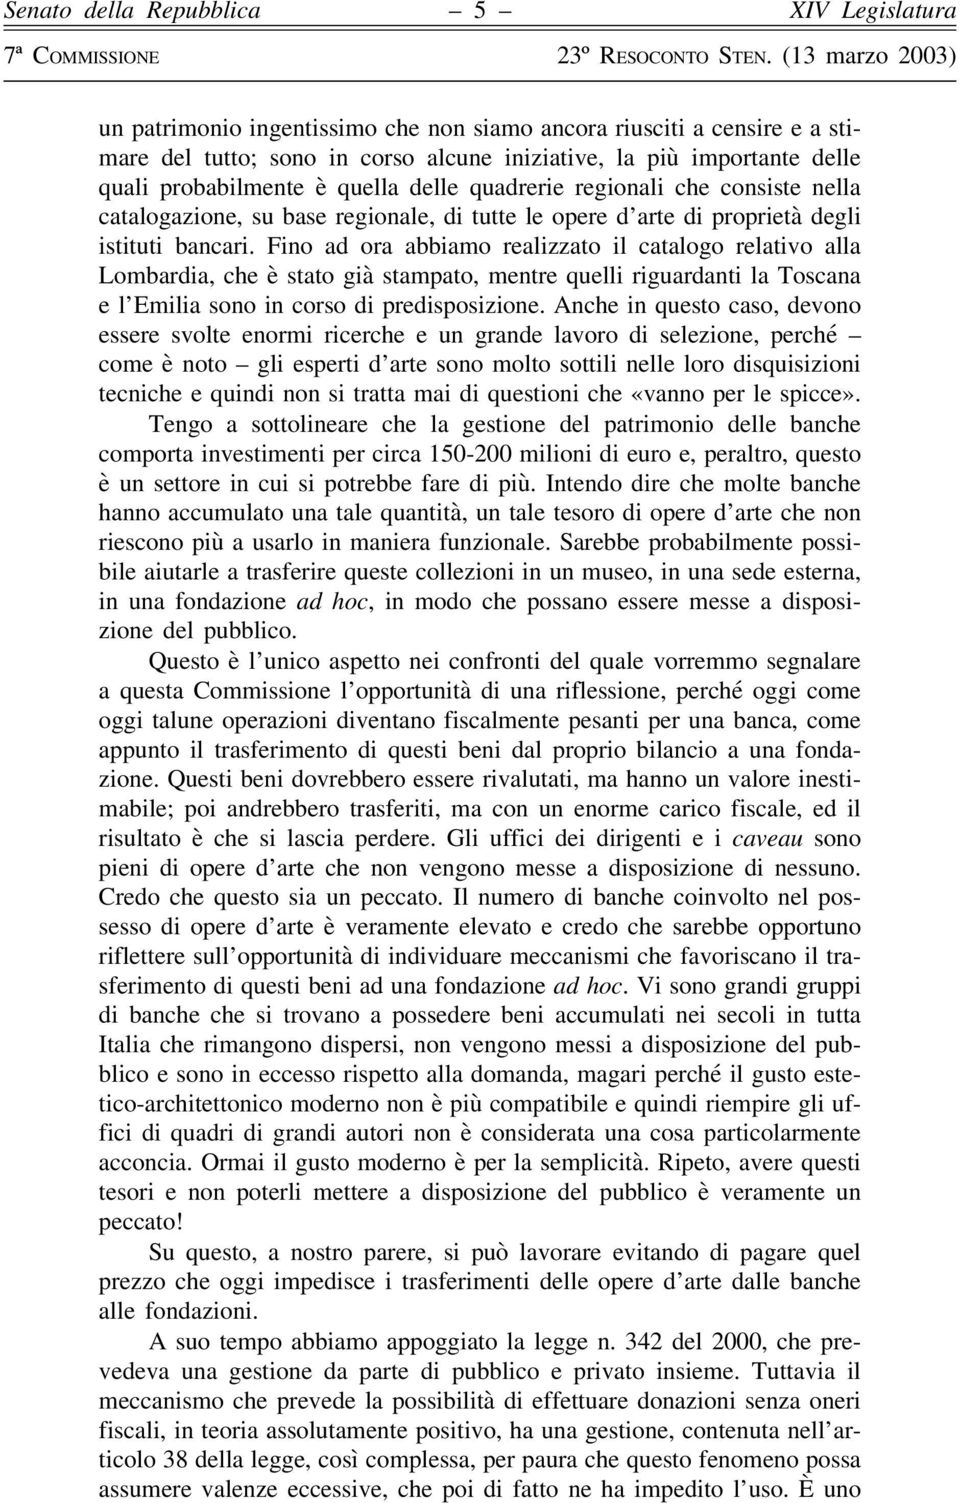 Fino ad ora abbiamo realizzato il catalogo relativo alla Lombardia, che è stato già stampato, mentre quelli riguardanti la Toscana e l Emilia sono in corso di predisposizione.